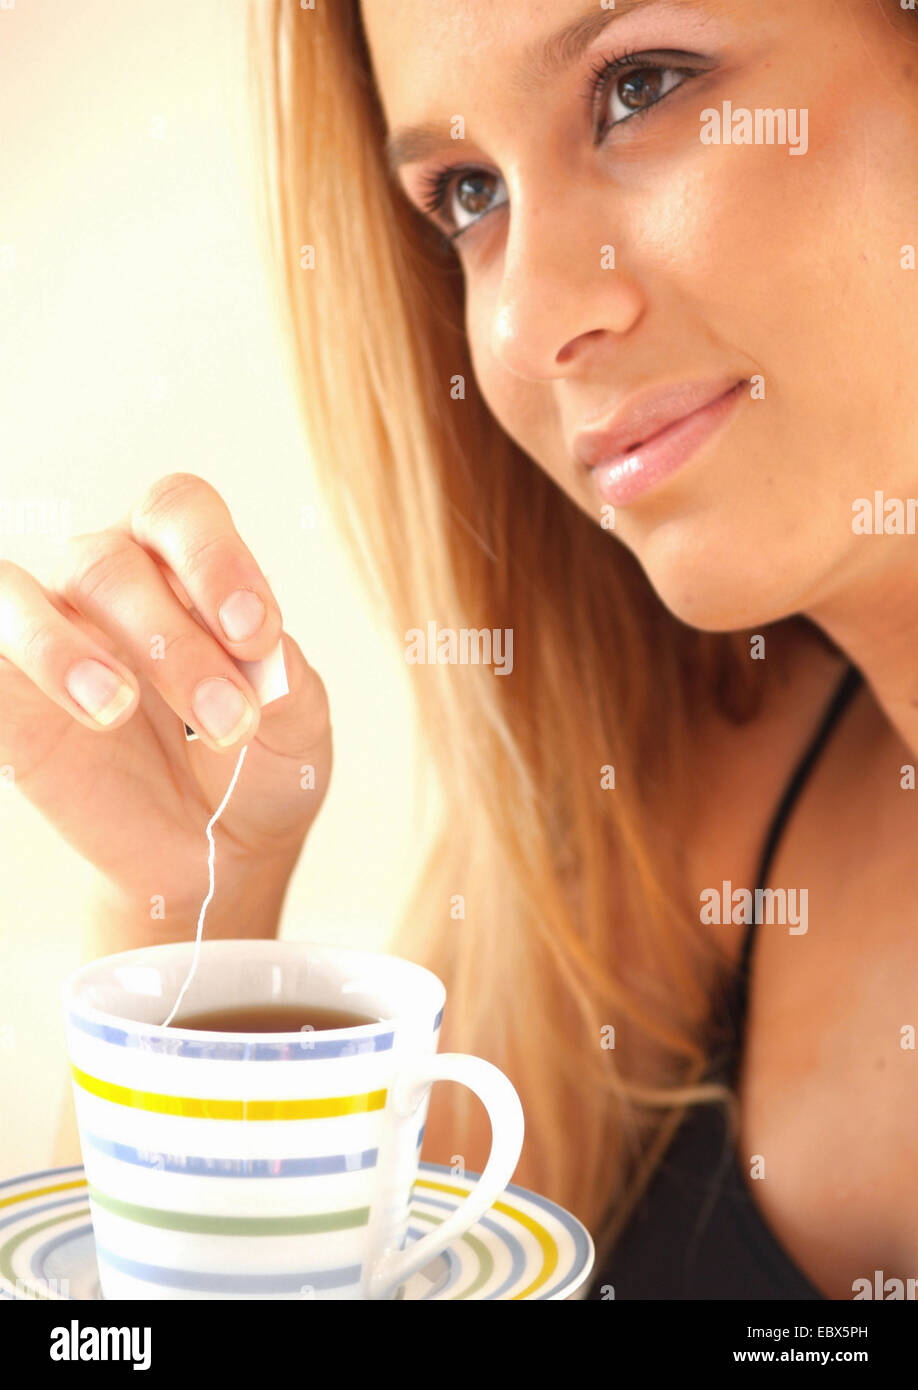 junge Frau strahlt Gelassenheit ist einen Teebeutel in eine Tasse eintauchen. Stockfoto